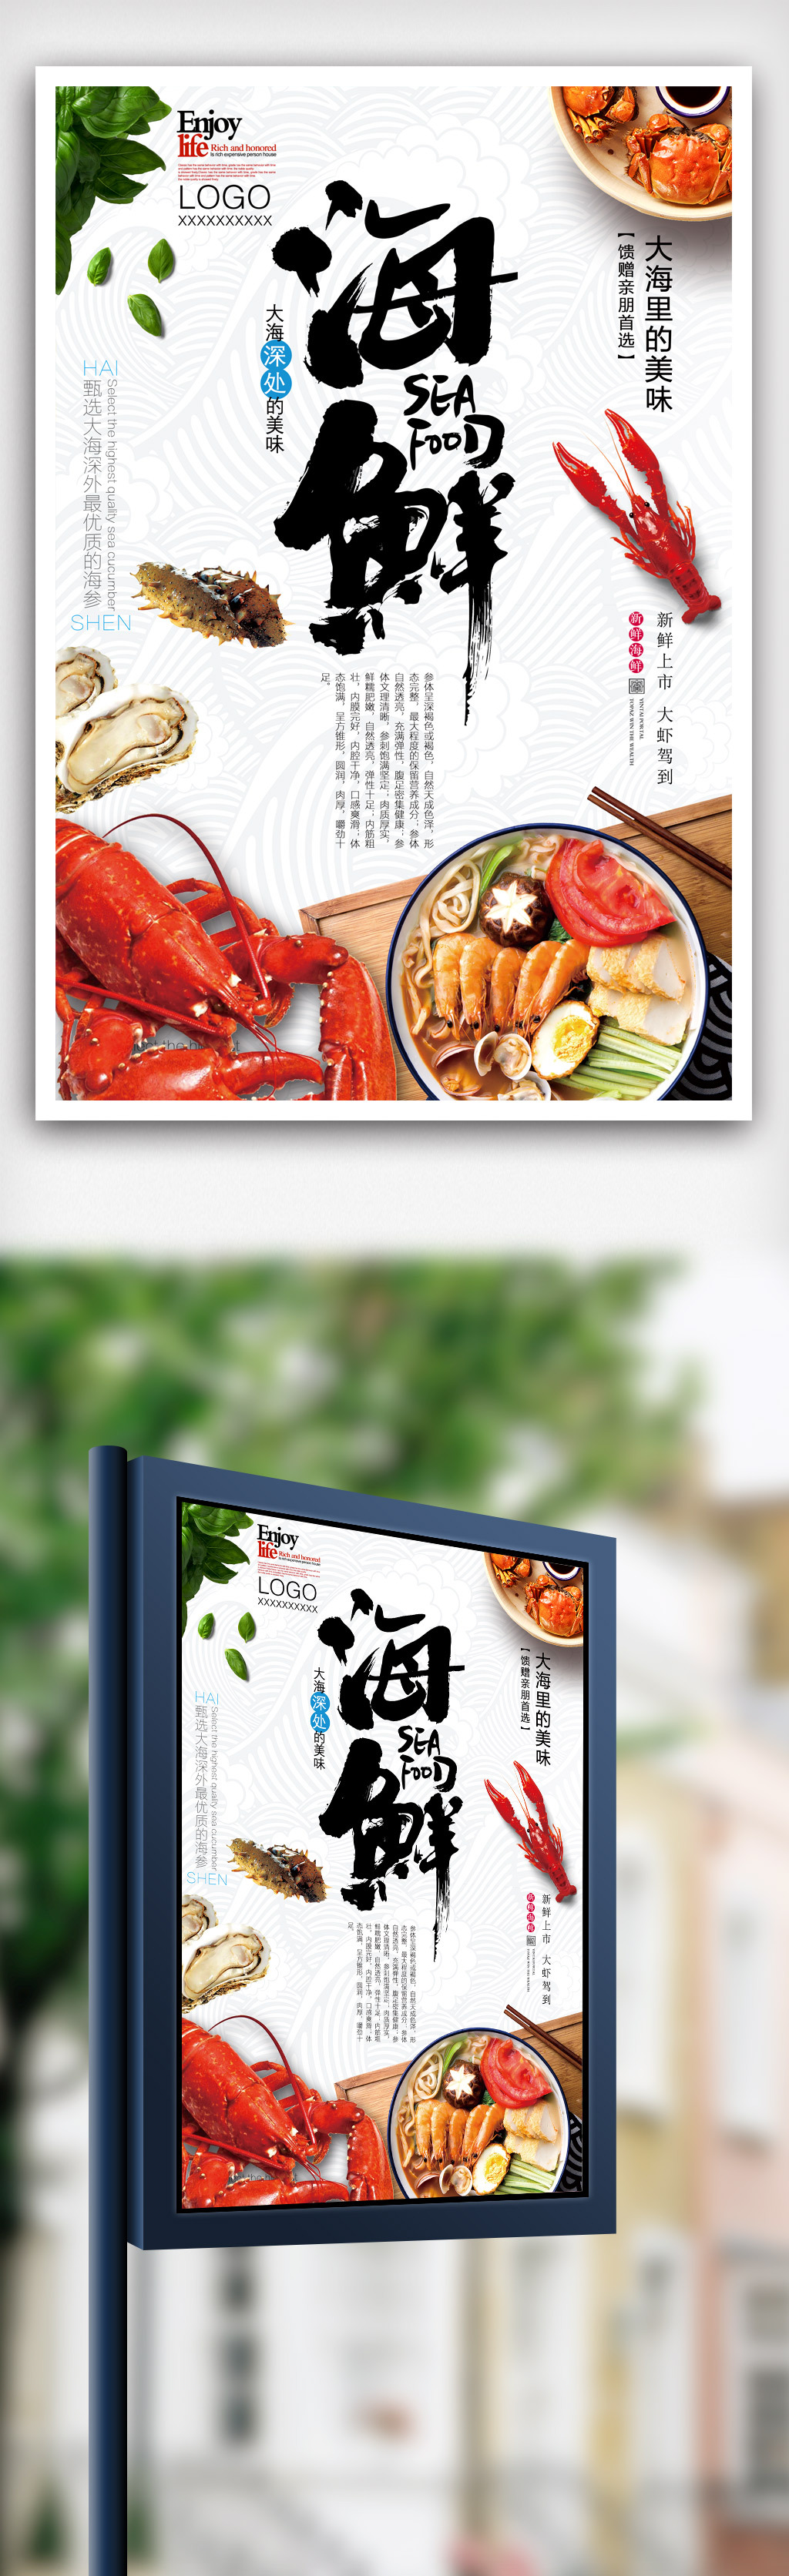 特色海鲜餐厅海报设计.psd图片